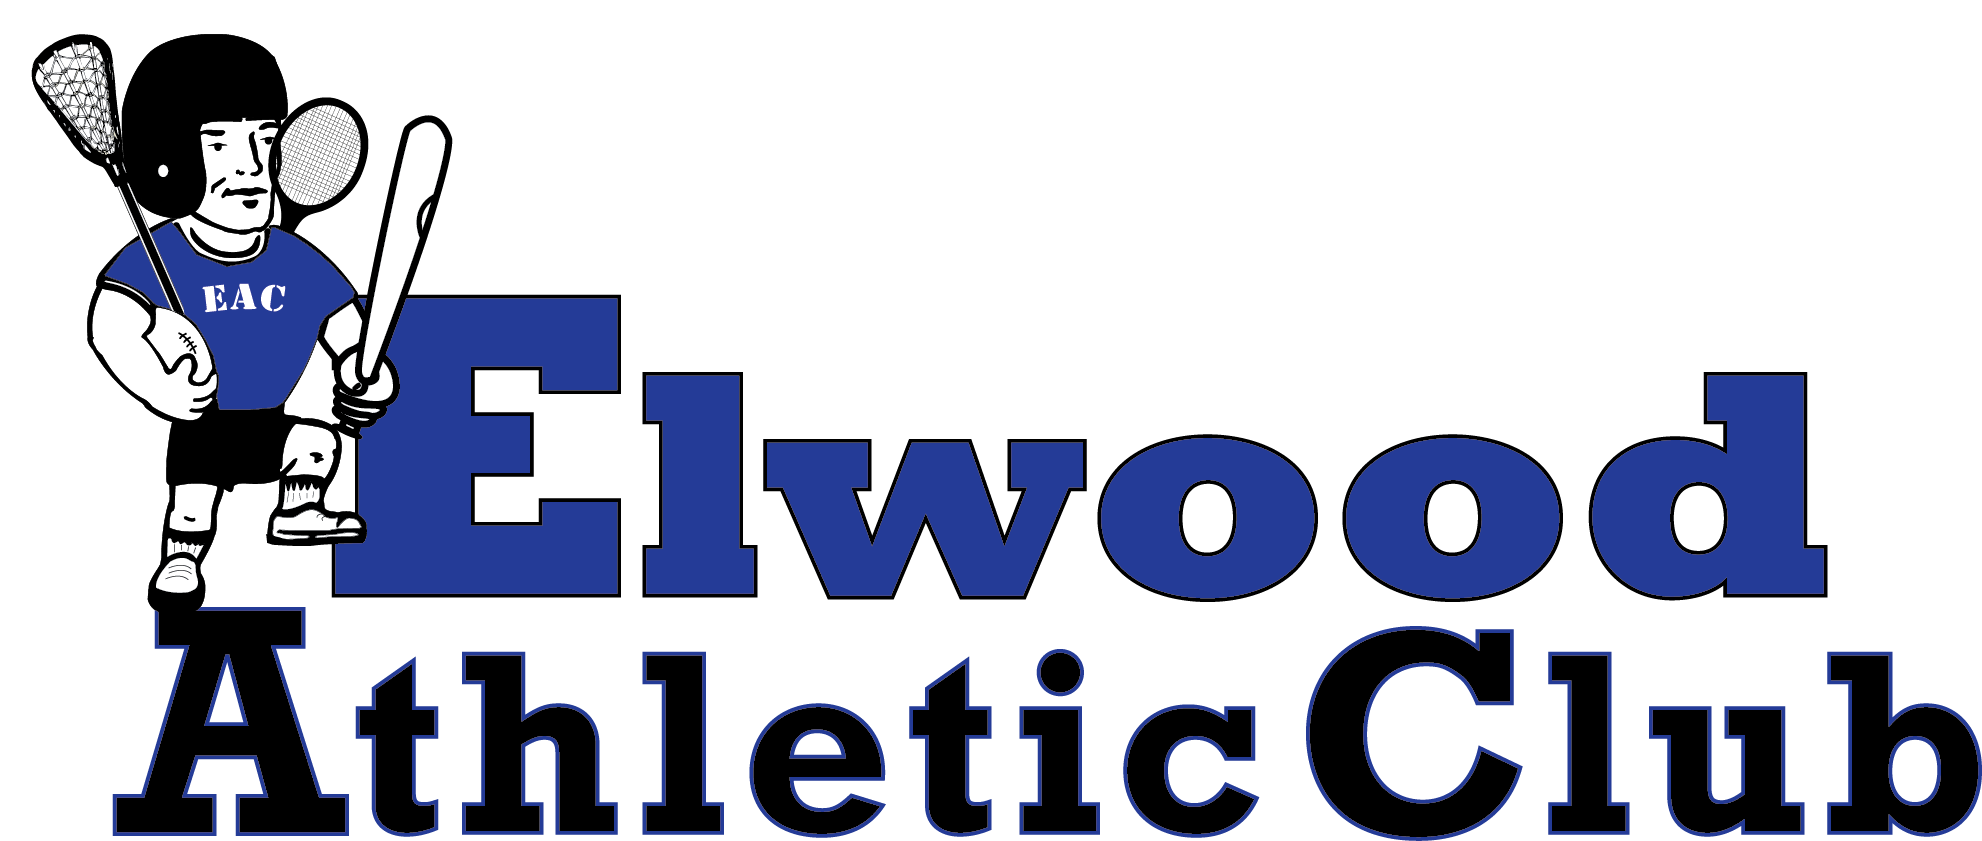 Elwood Athletic Club